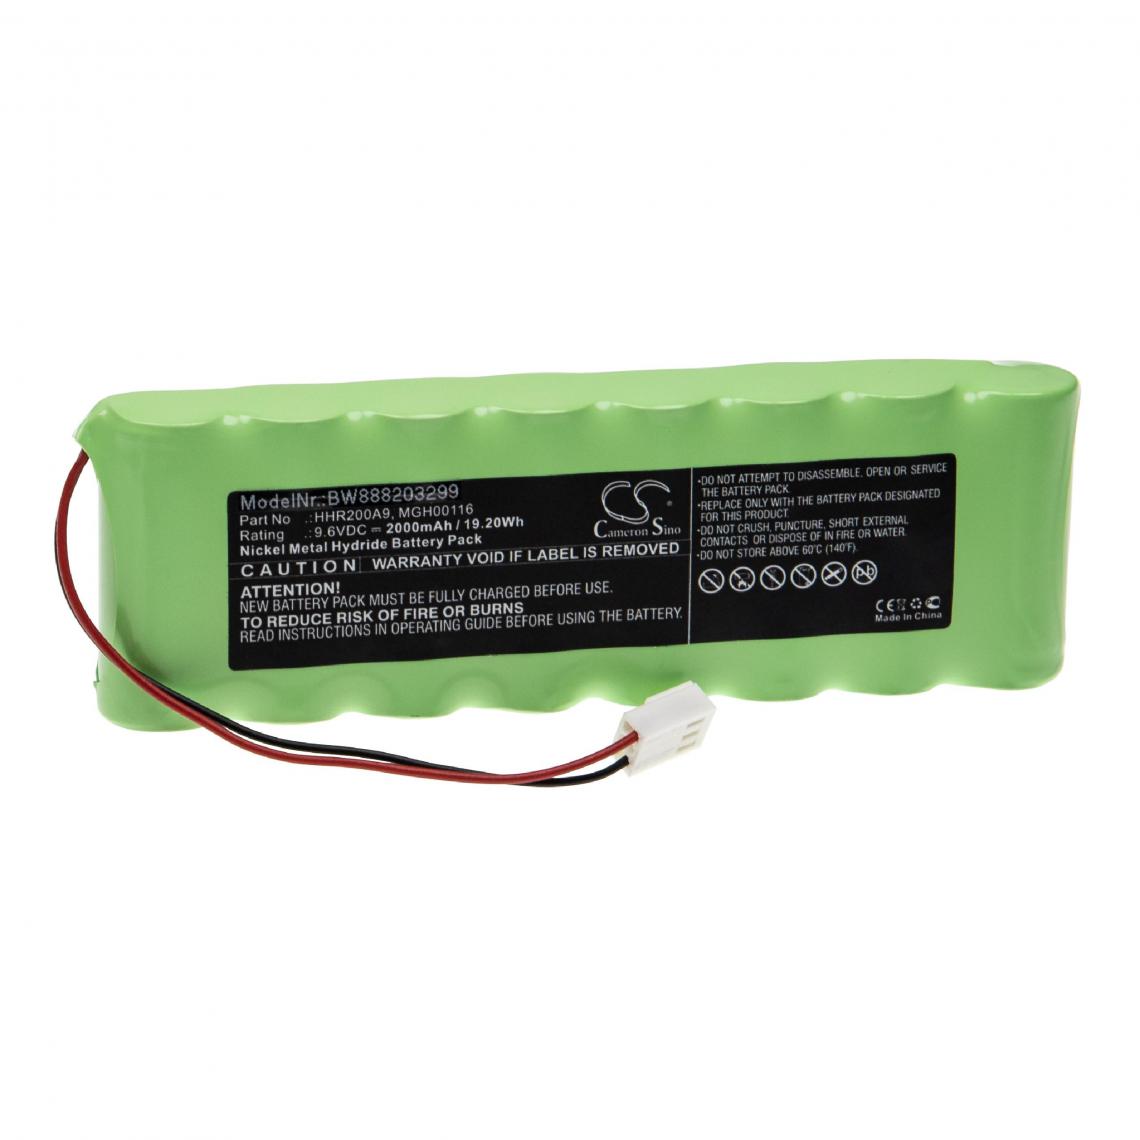 Vhbw - vhbw Batterie compatible avec Volumed Uvp7000, VP7000, VP7000 Chroma volumetric pump appareil médical (2000mAh, 9,6V, NiMH) - Piles spécifiques